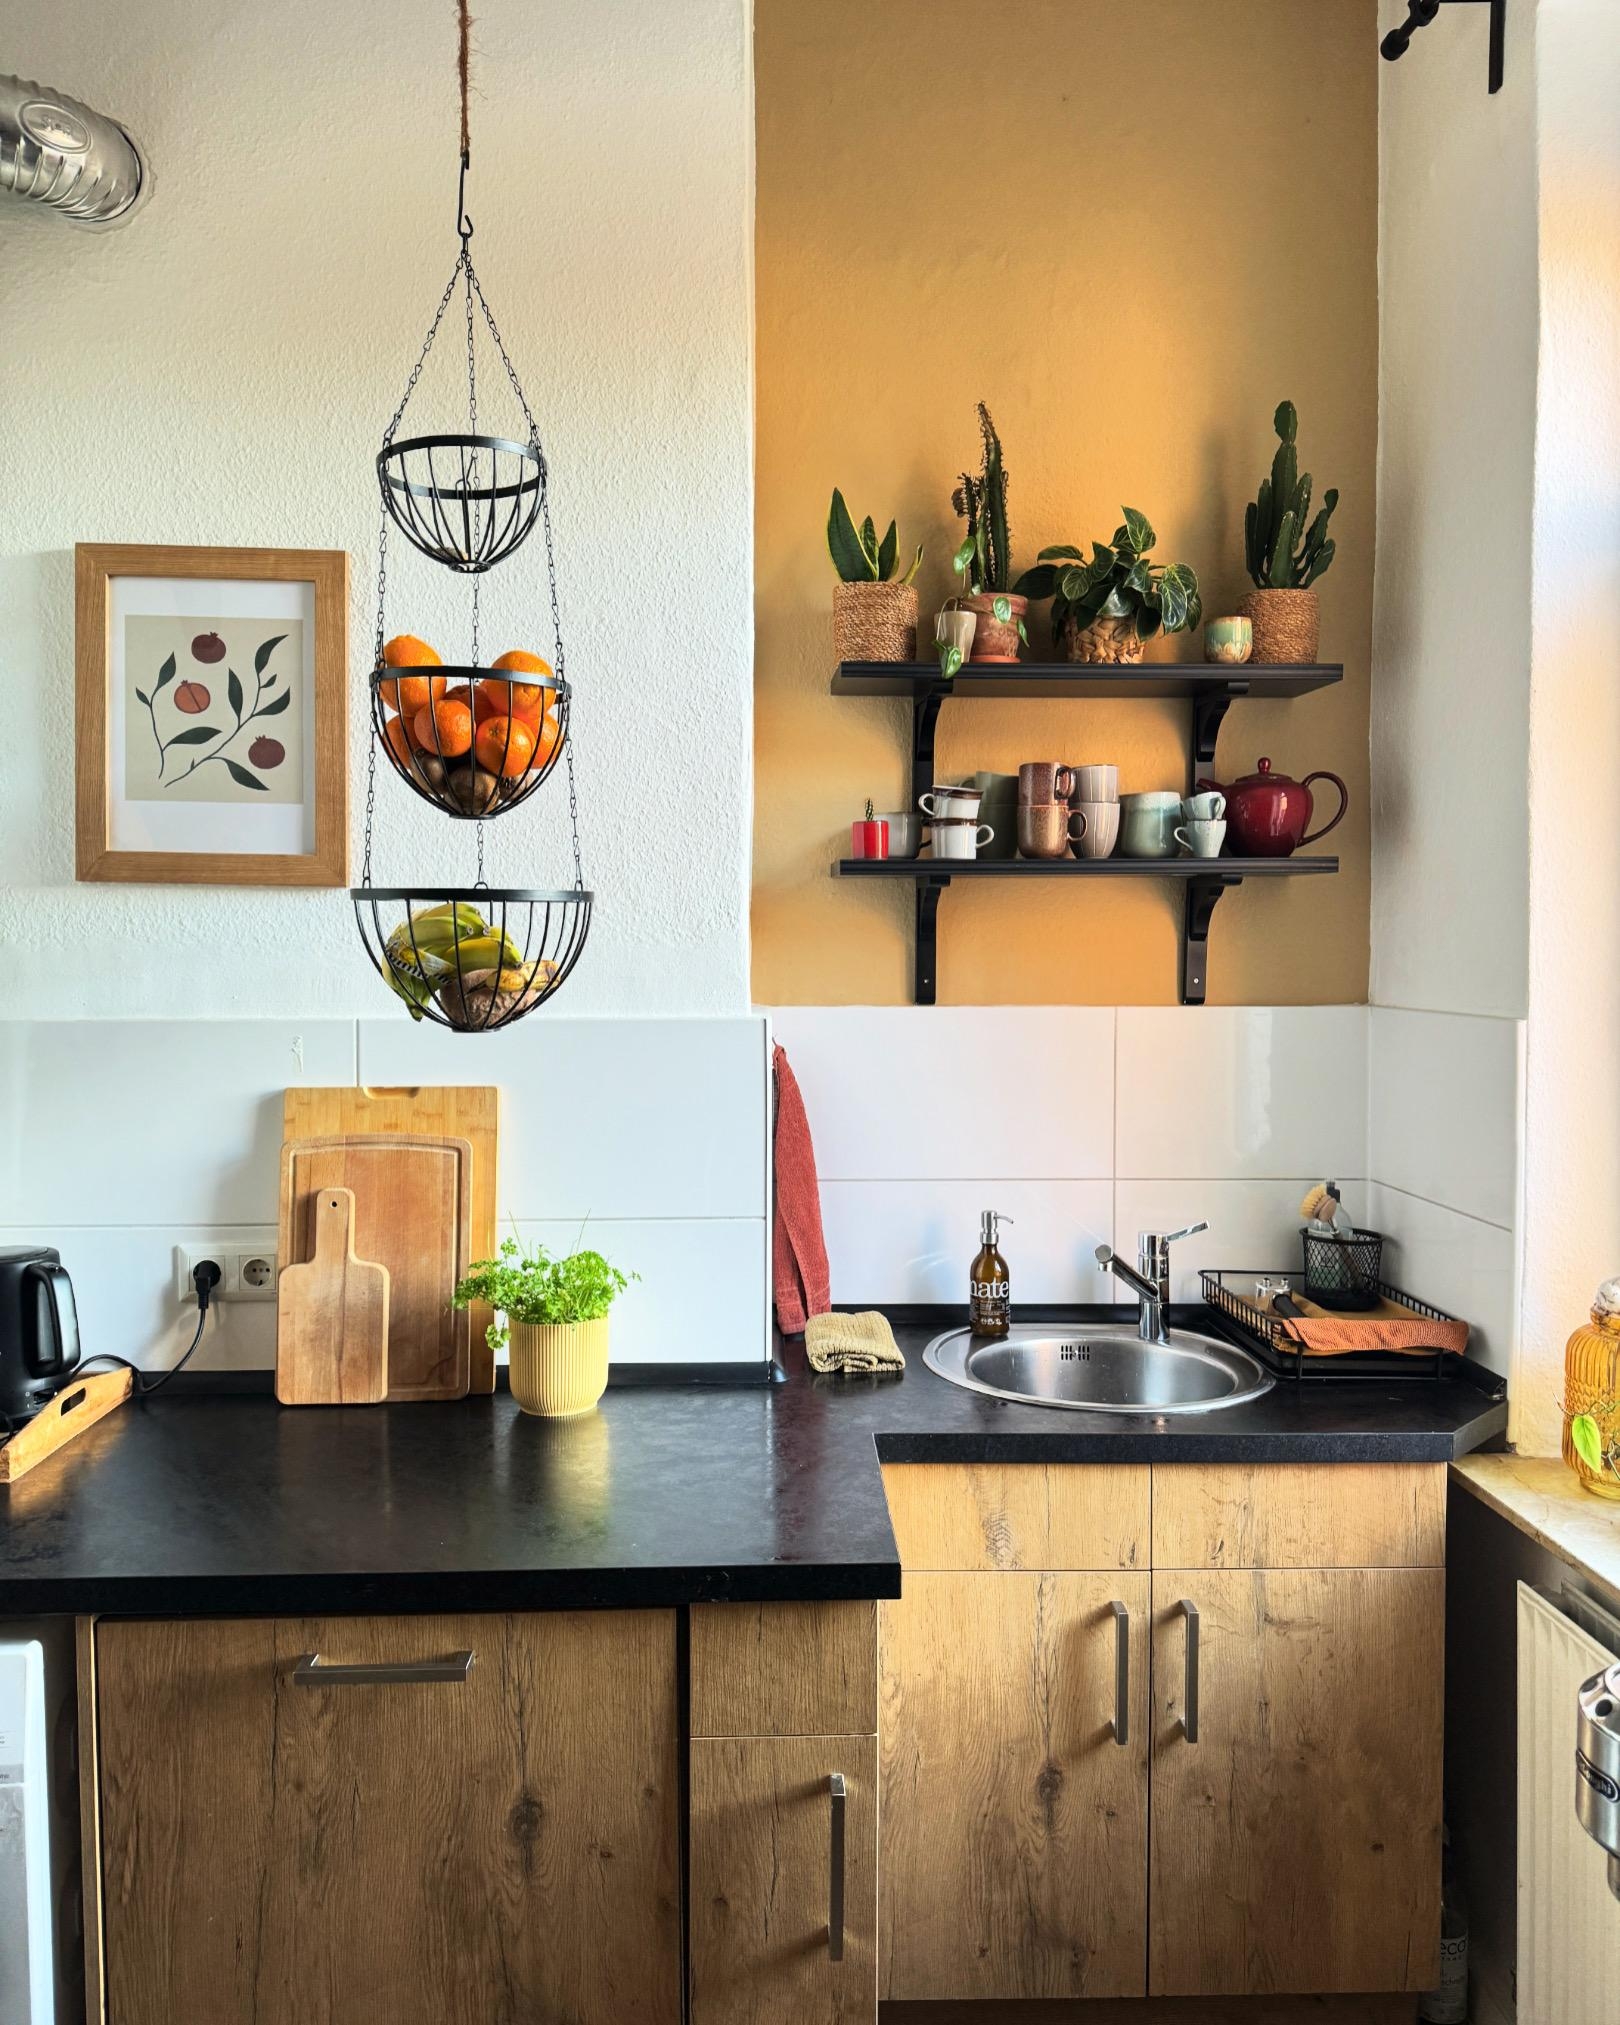 Küchennische 💛
#küche #altbau #altbauwohnung #wandfarbe #wandregal #küchennische #smallkitchen #colorful #plantlove #kitcheninspo #kücheninspo 